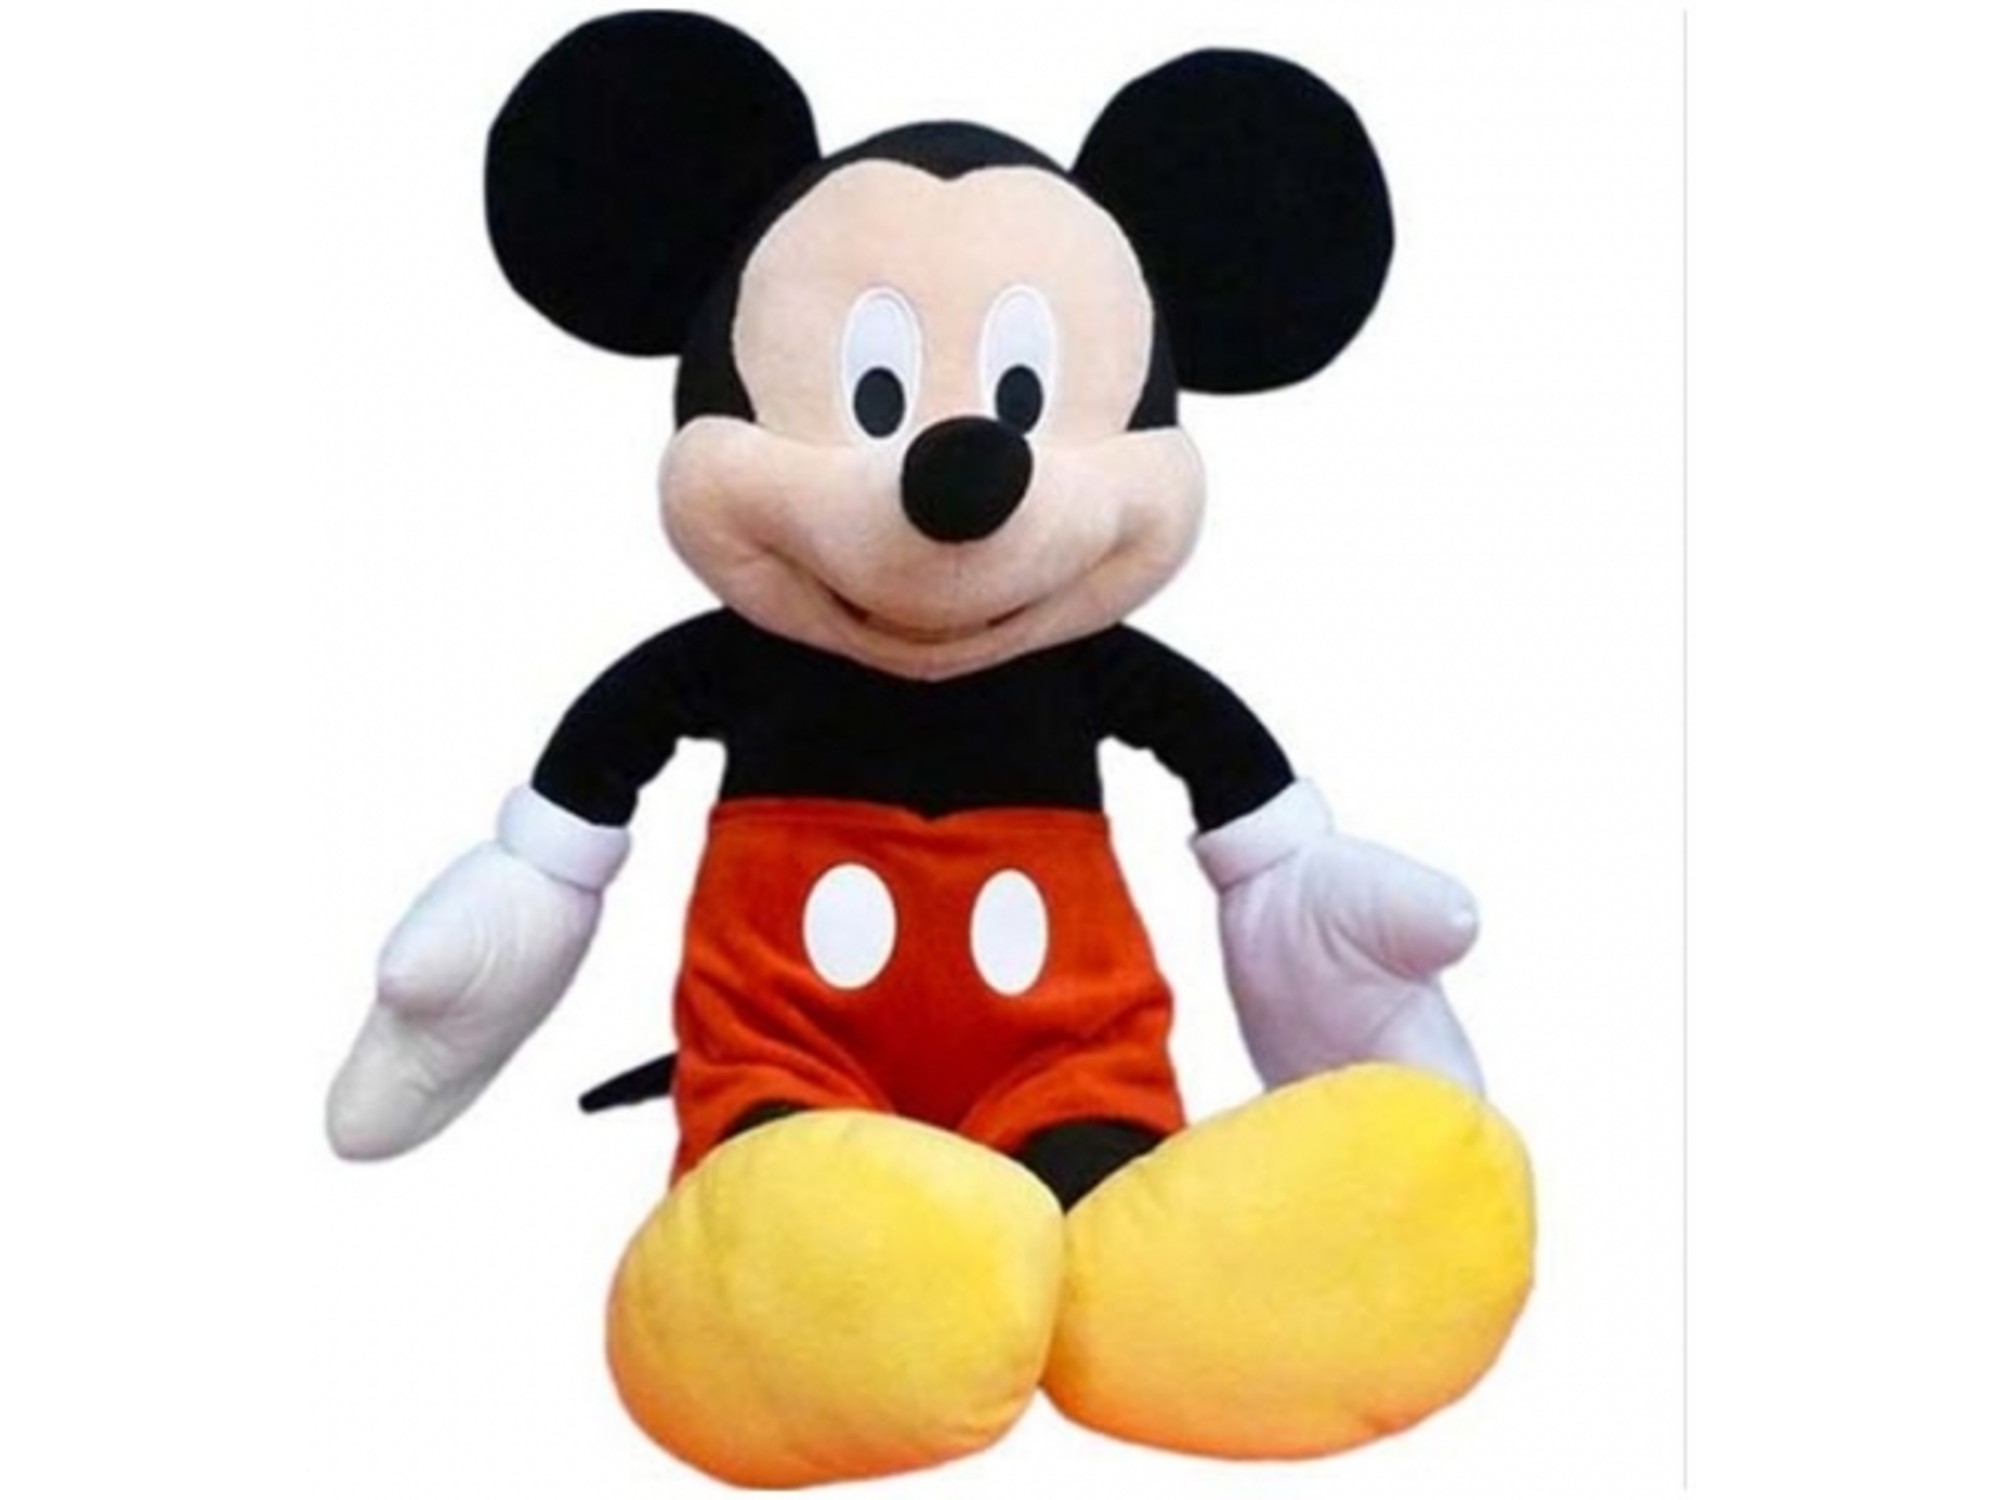 Disney Mickey Plišana igračka 22cm D-2003